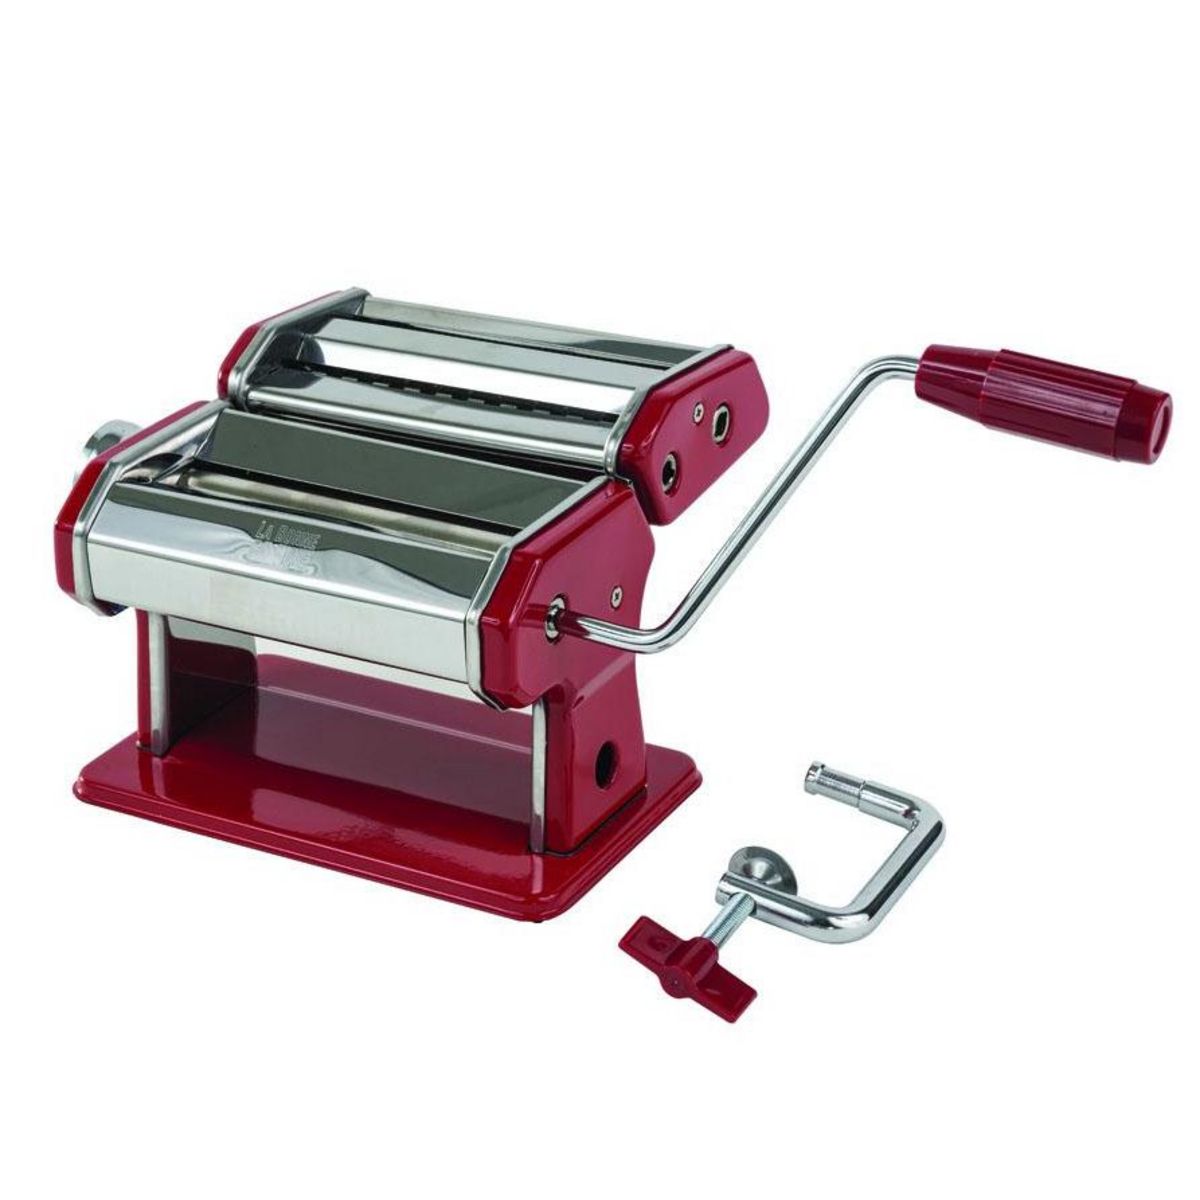  Machine à pâtes manuelle rouge - lbg21p003